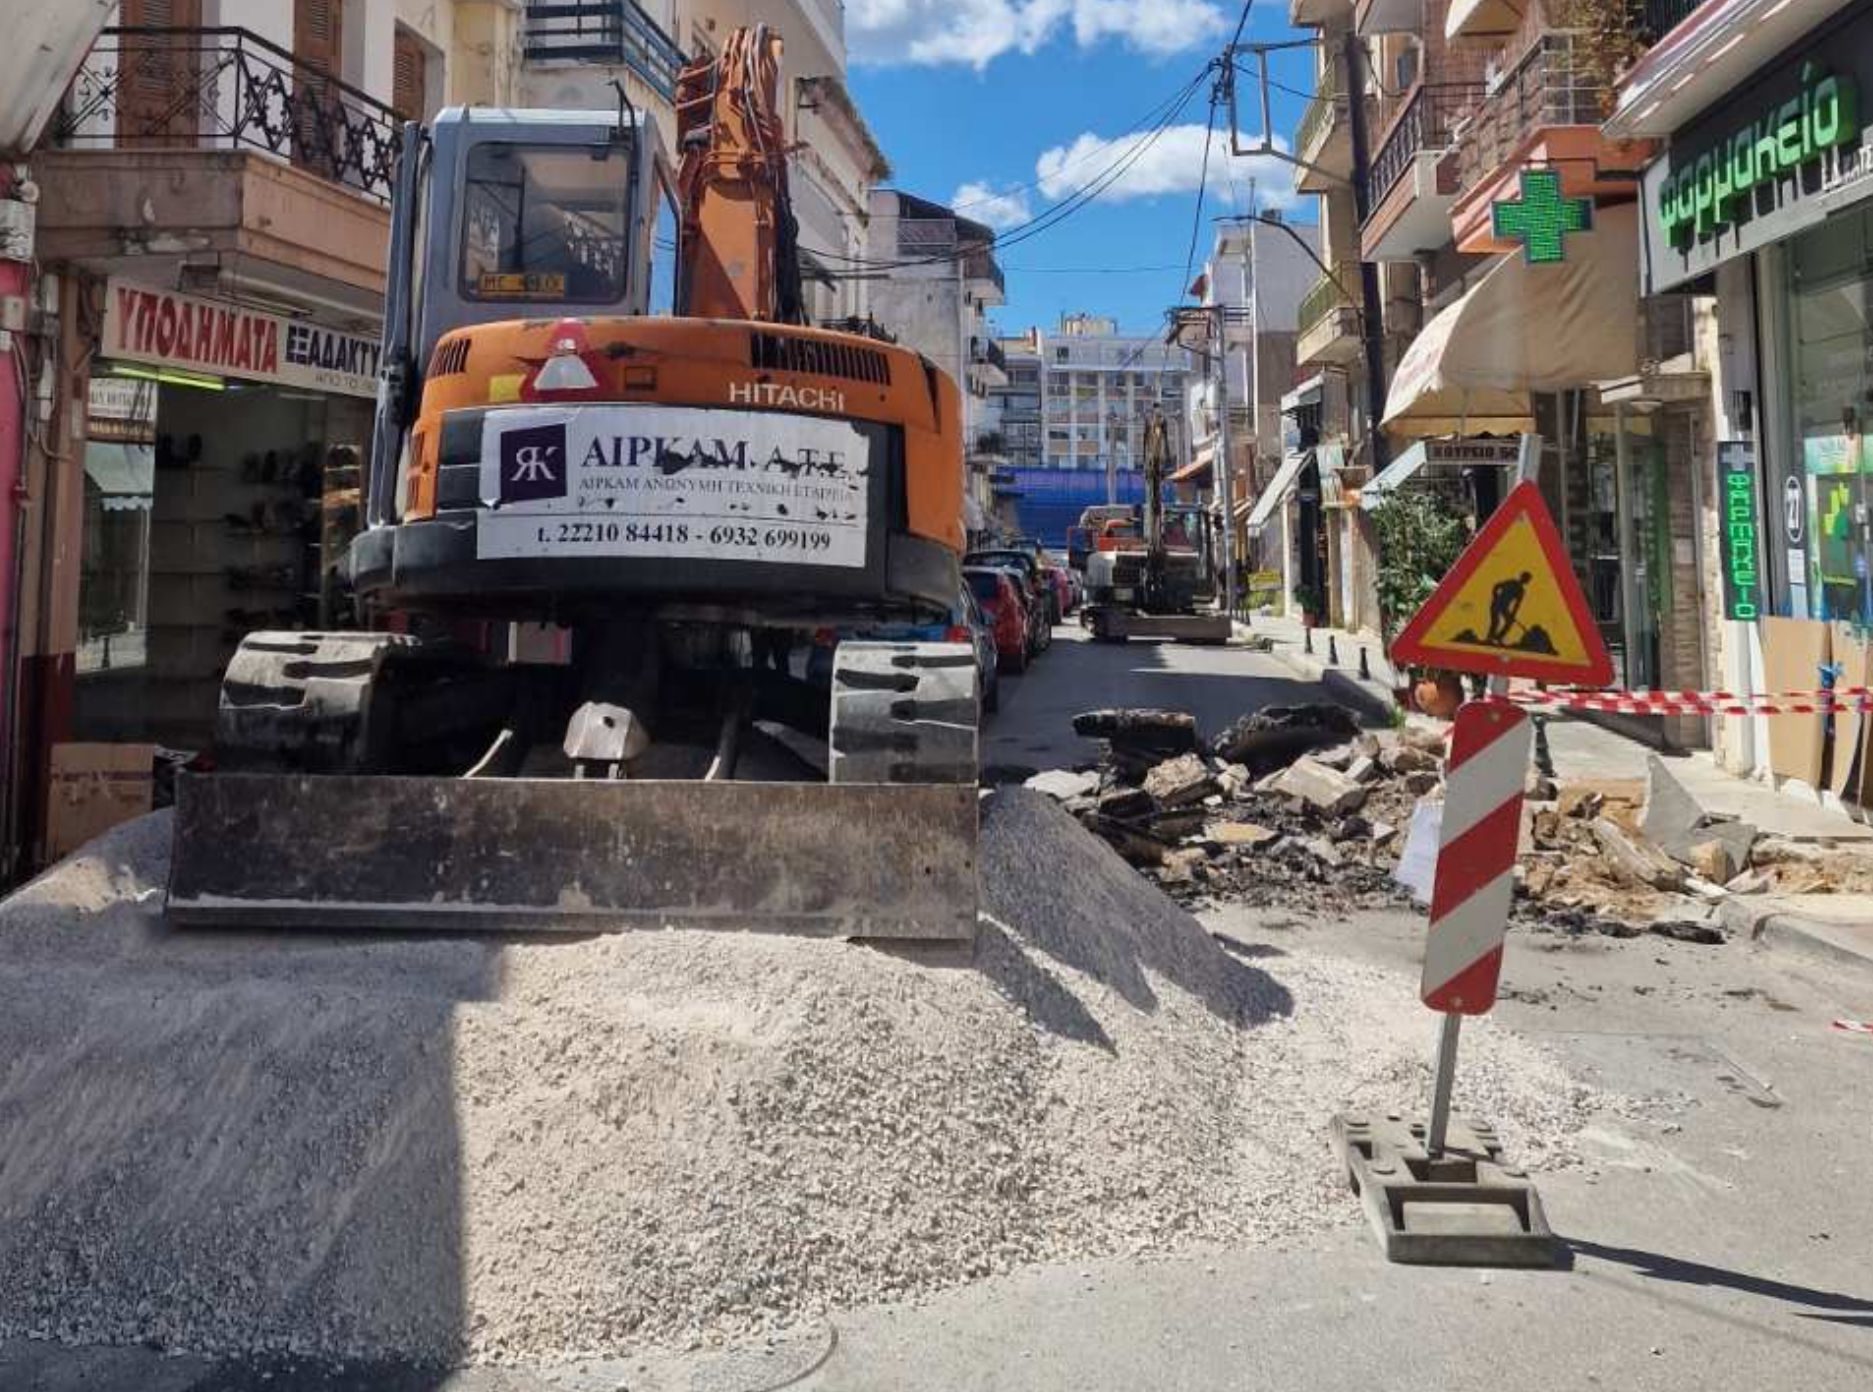 Χαλκίδα: Νέα έργα το Open Mall στην πόλη – Ποιος δρόμος αλλάζει όψη